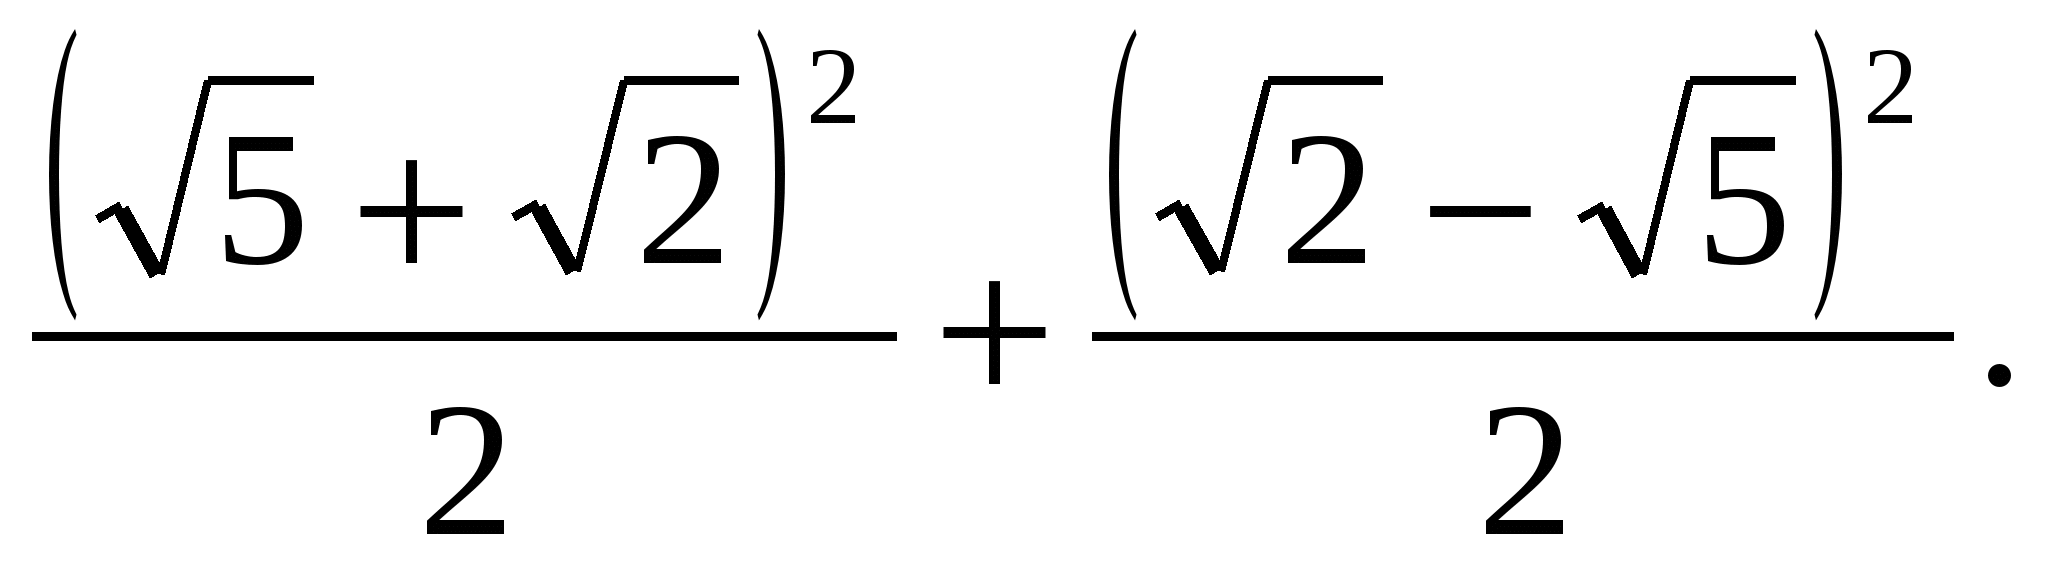 Формулы π. Франсуа Виет число пи. Формула Виета для приближения числа пи. Формула вычисления числа пи. Формула расчета числа пи.